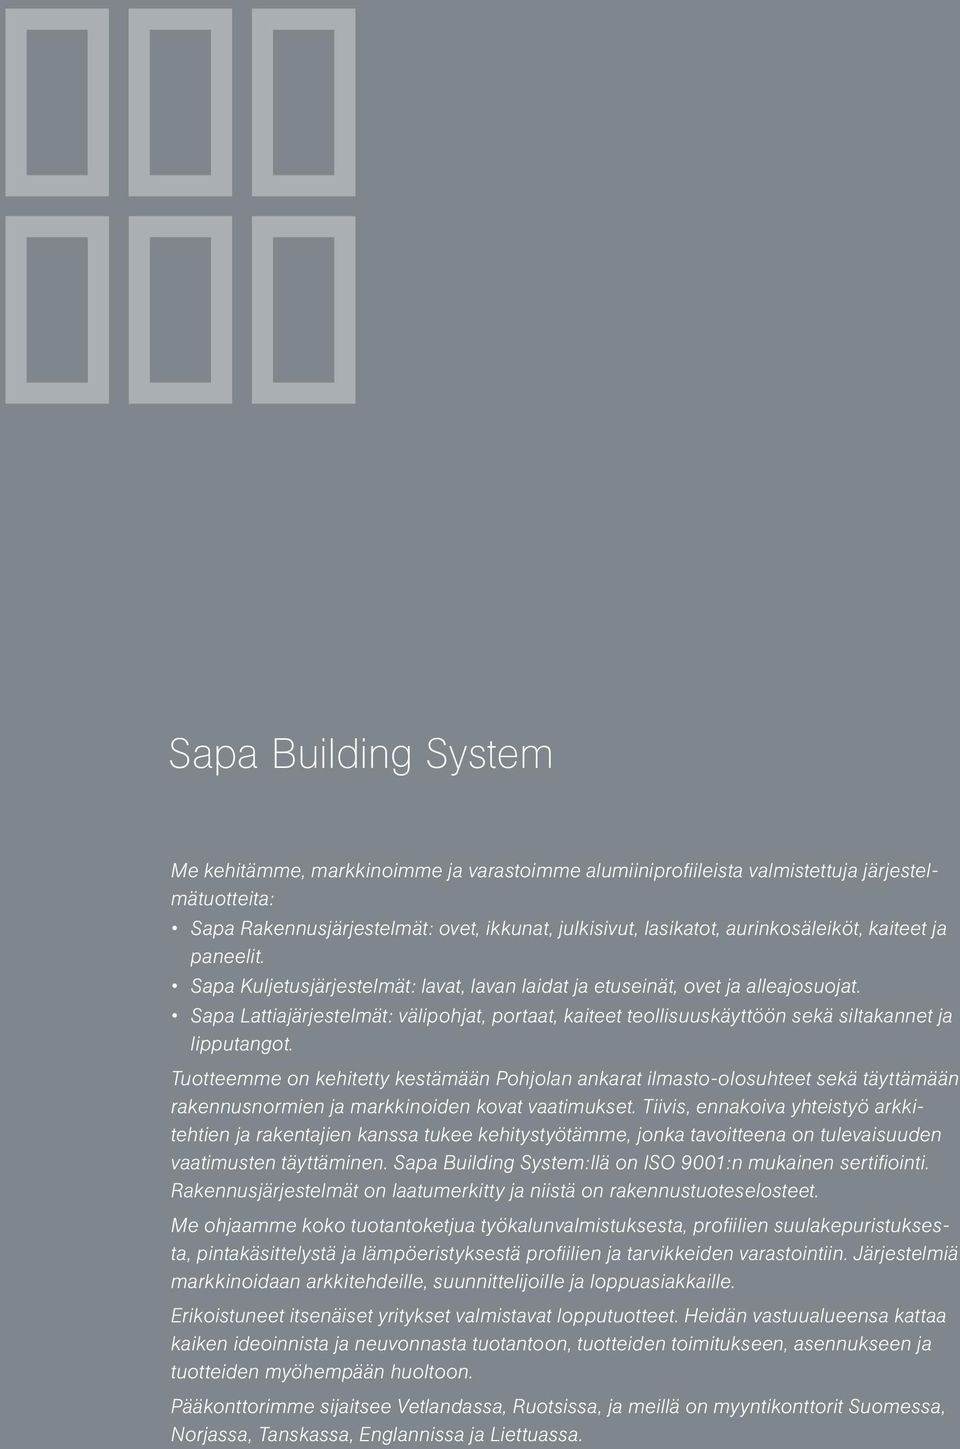 Sapa Lattiajärjestelmät: välipohjat, portaat, kaiteet teollisuuskäyttöön sekä siltakannet ja lipputangot.